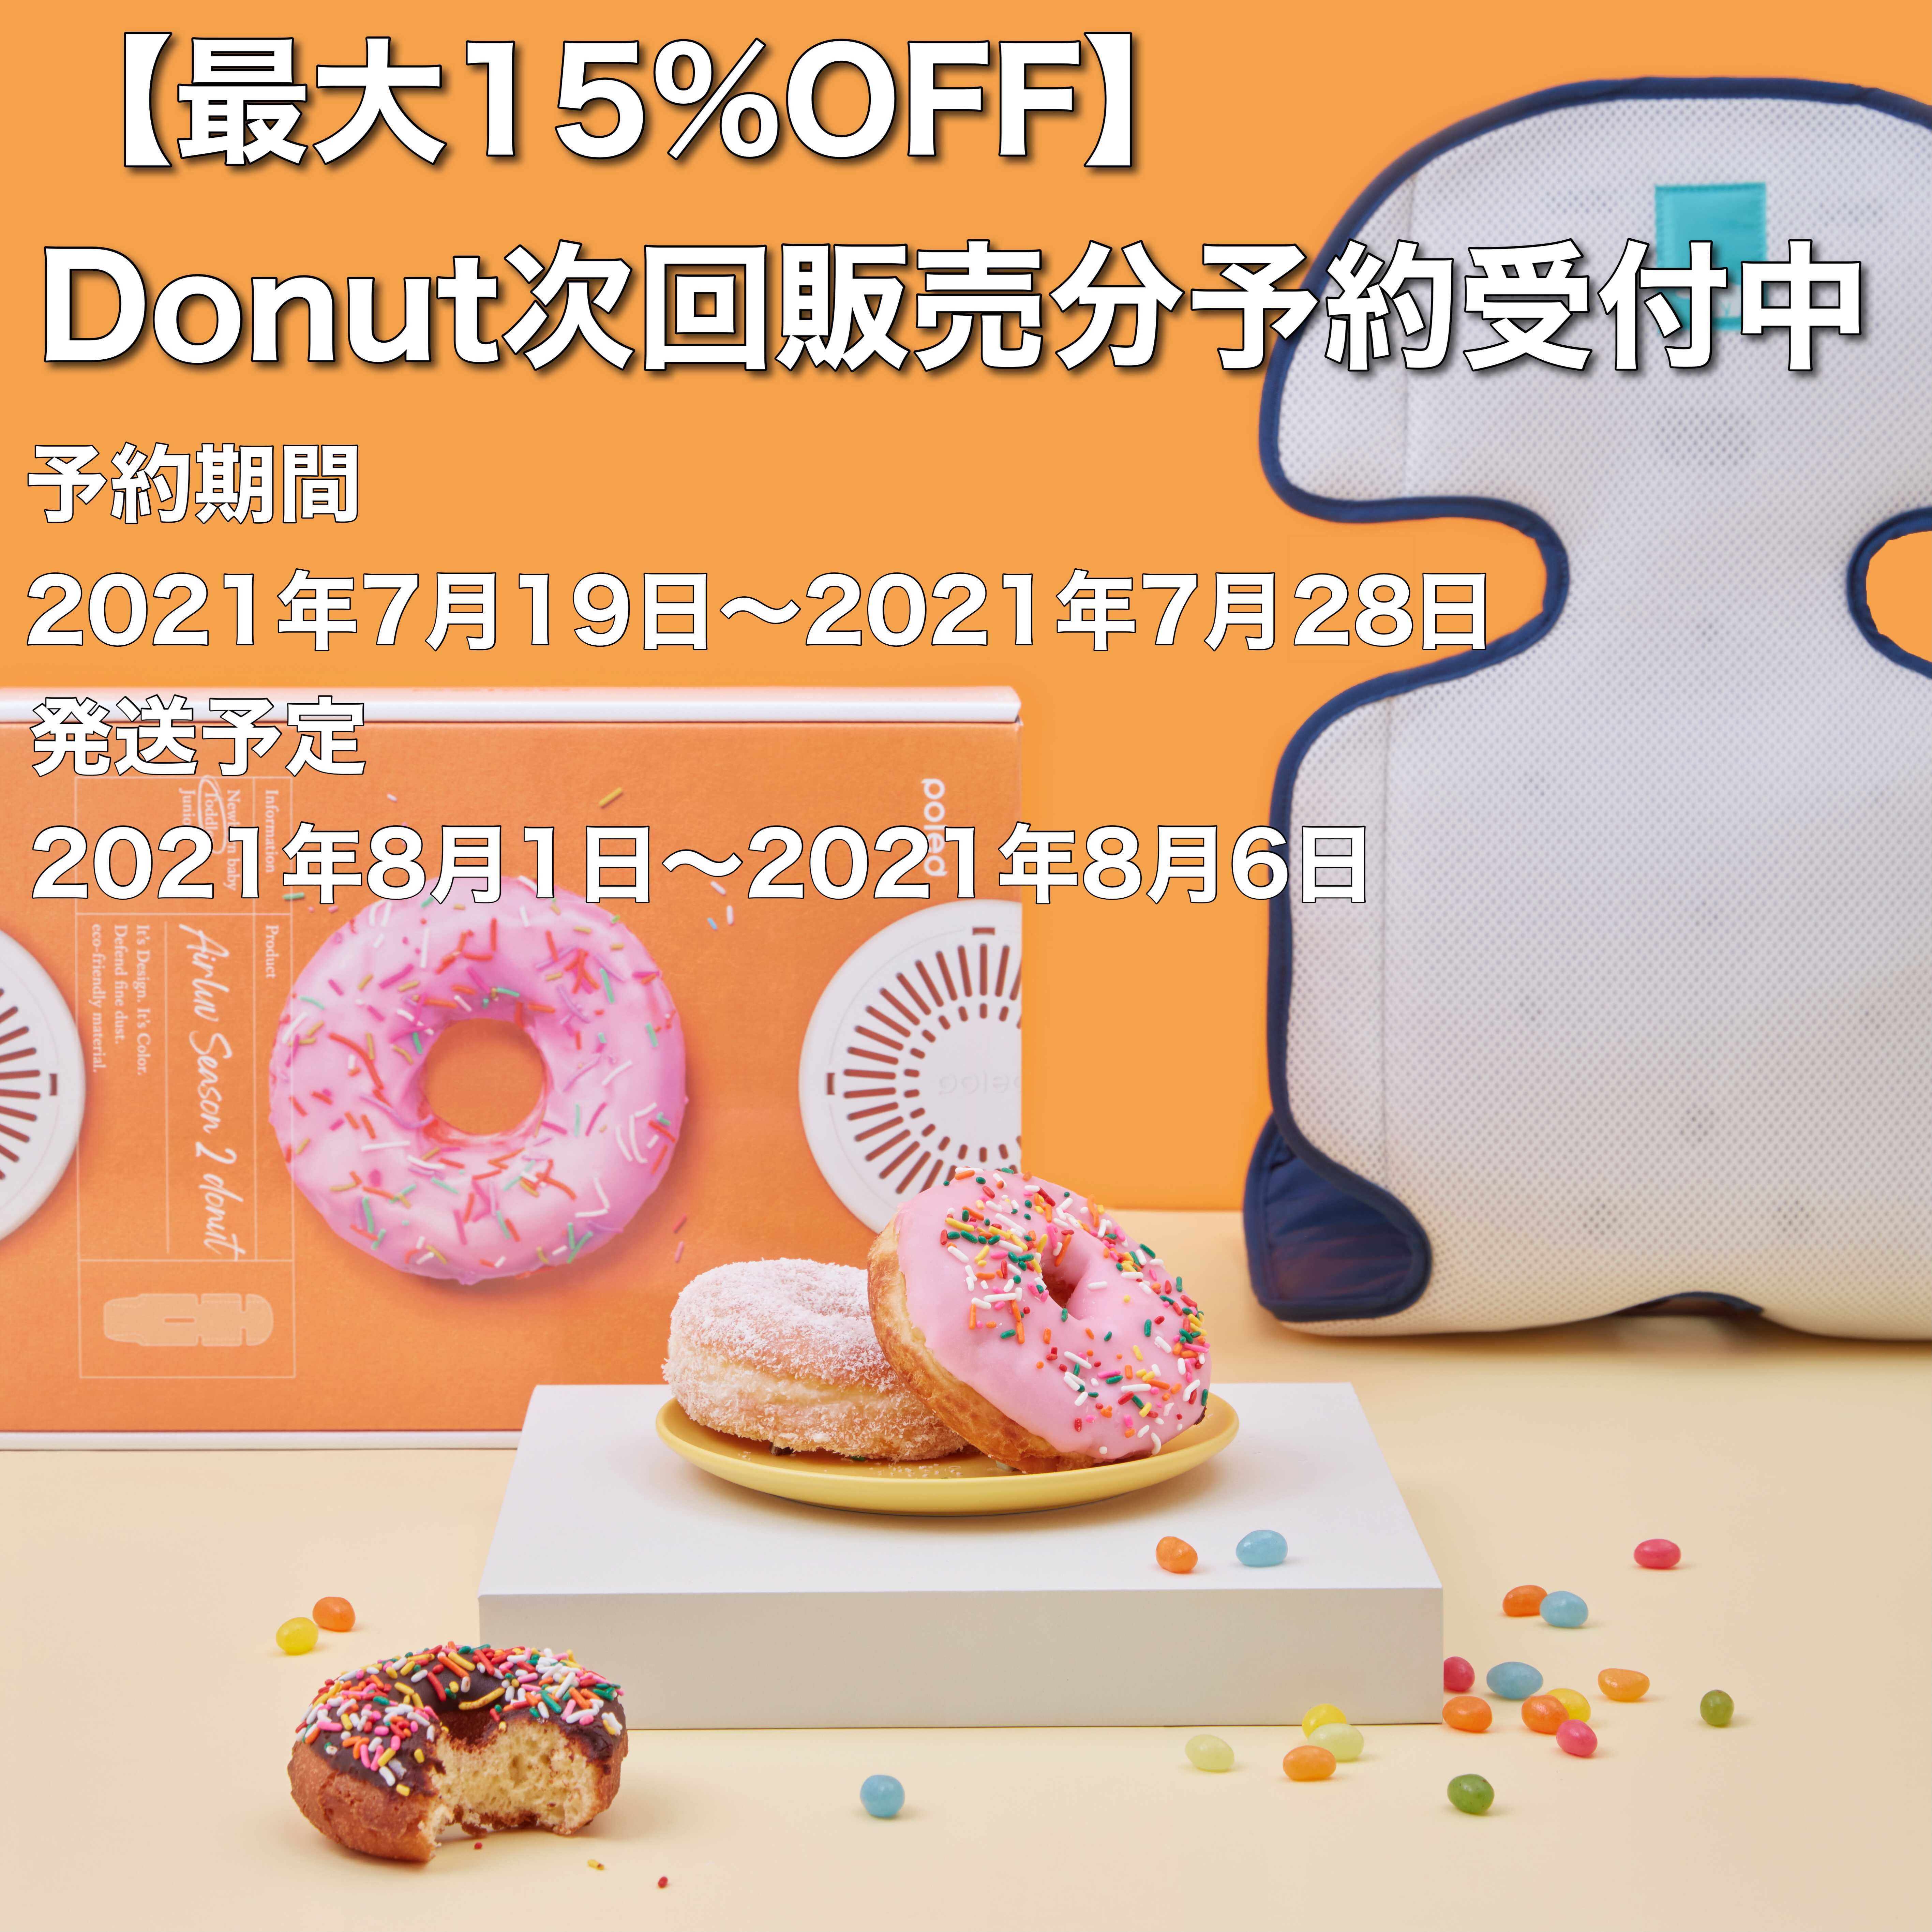 【最大15%OFF】Donut次回販売分の予約開始のご案内